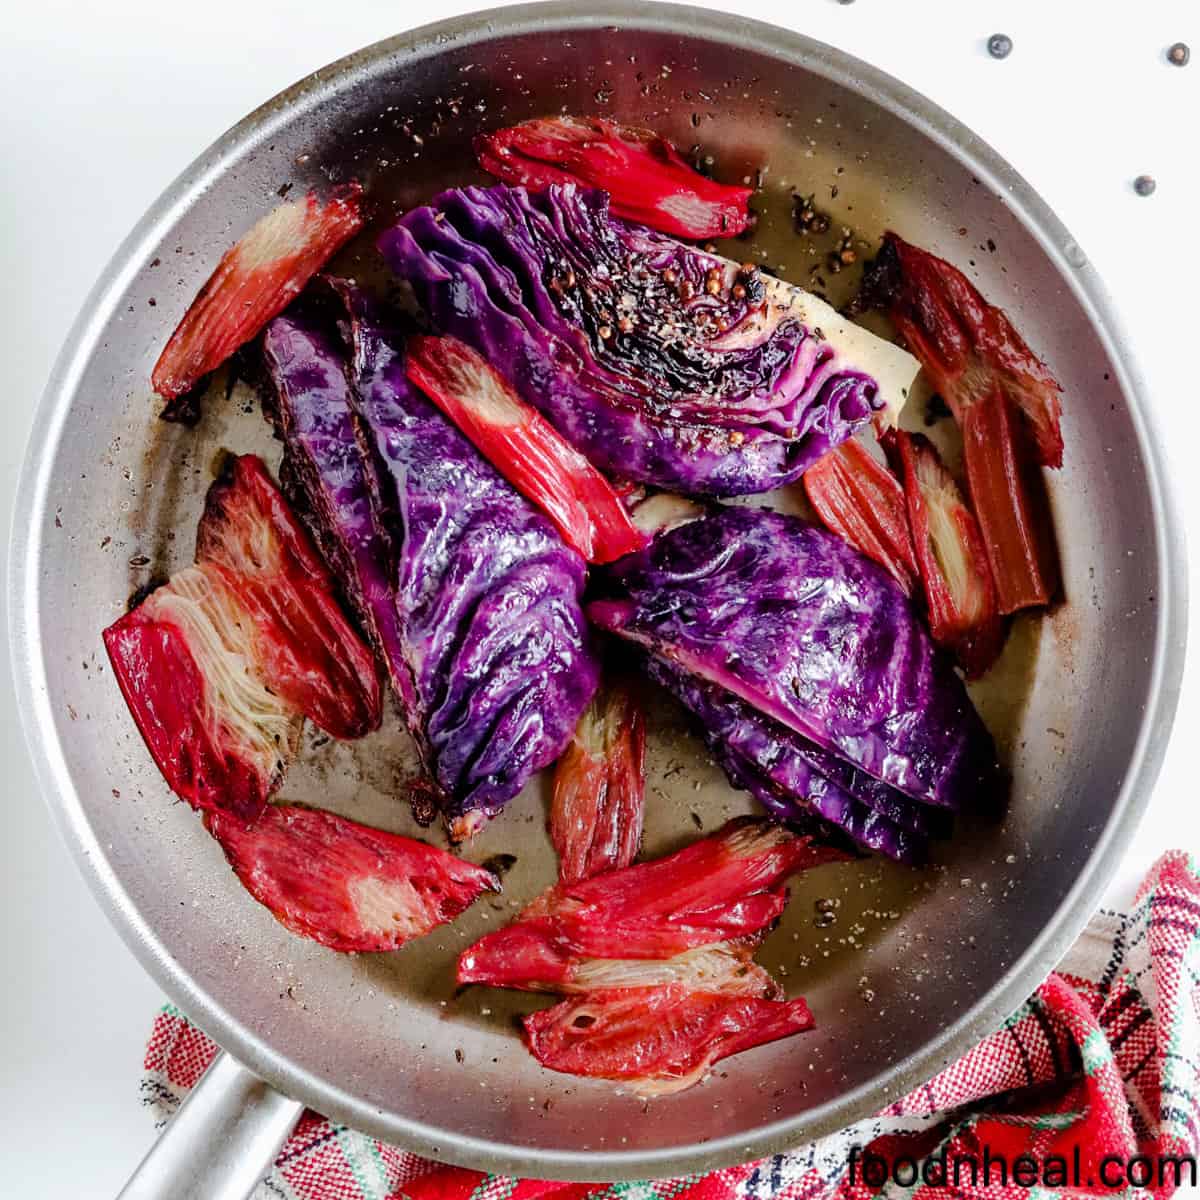 Rhubarb recipes